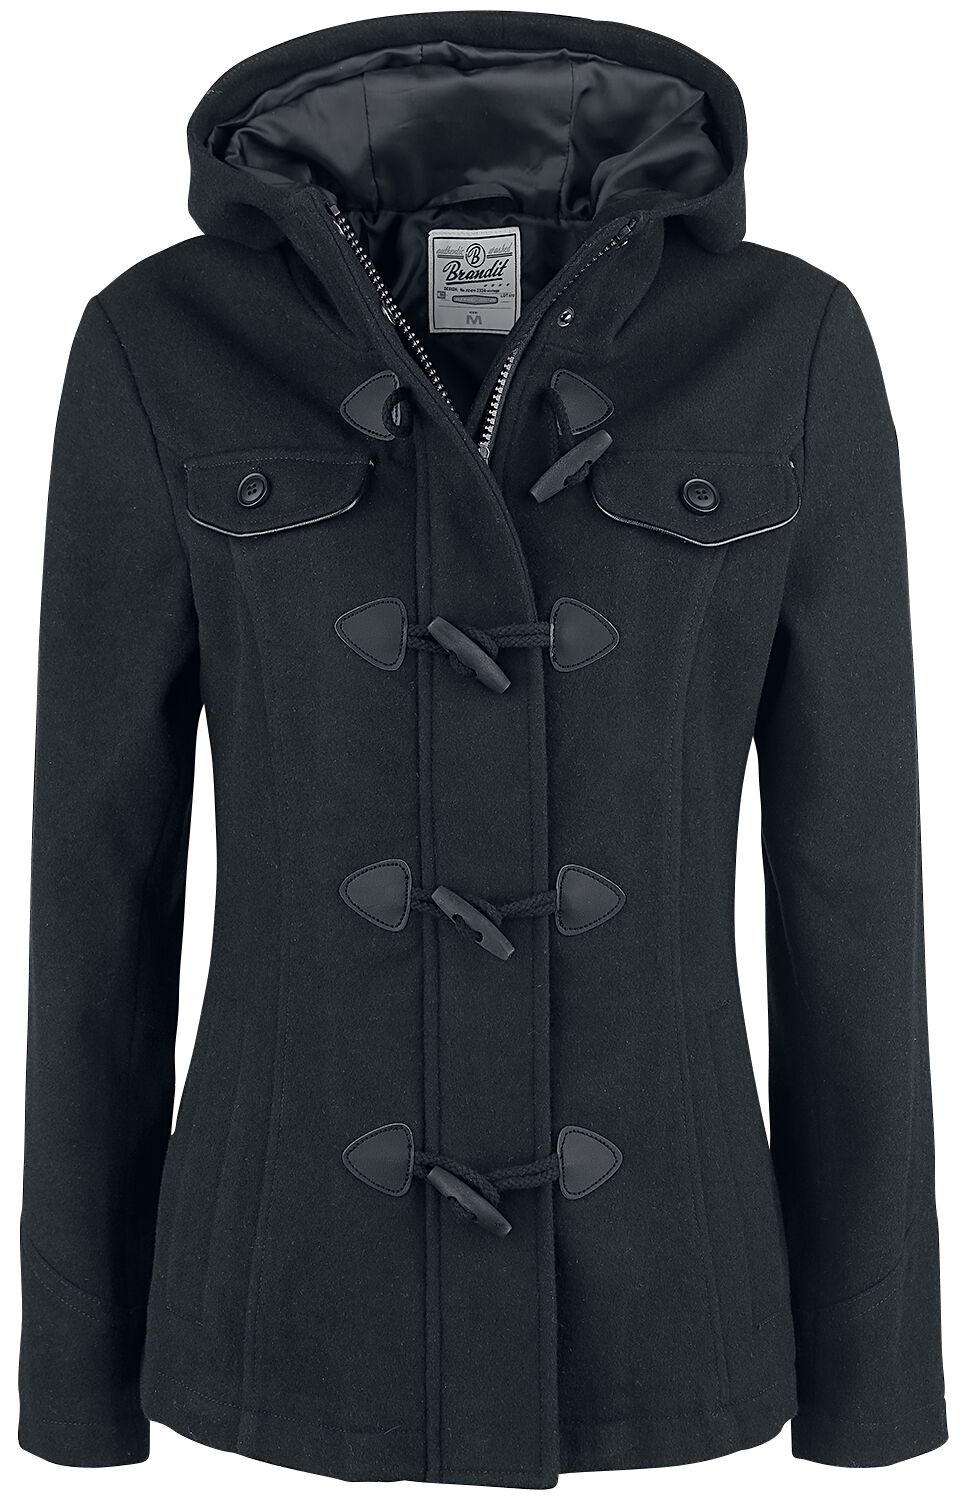 Parka de Brandit - Manteau Duffle-Coat Femme - S à XXL - pour Femme - noir